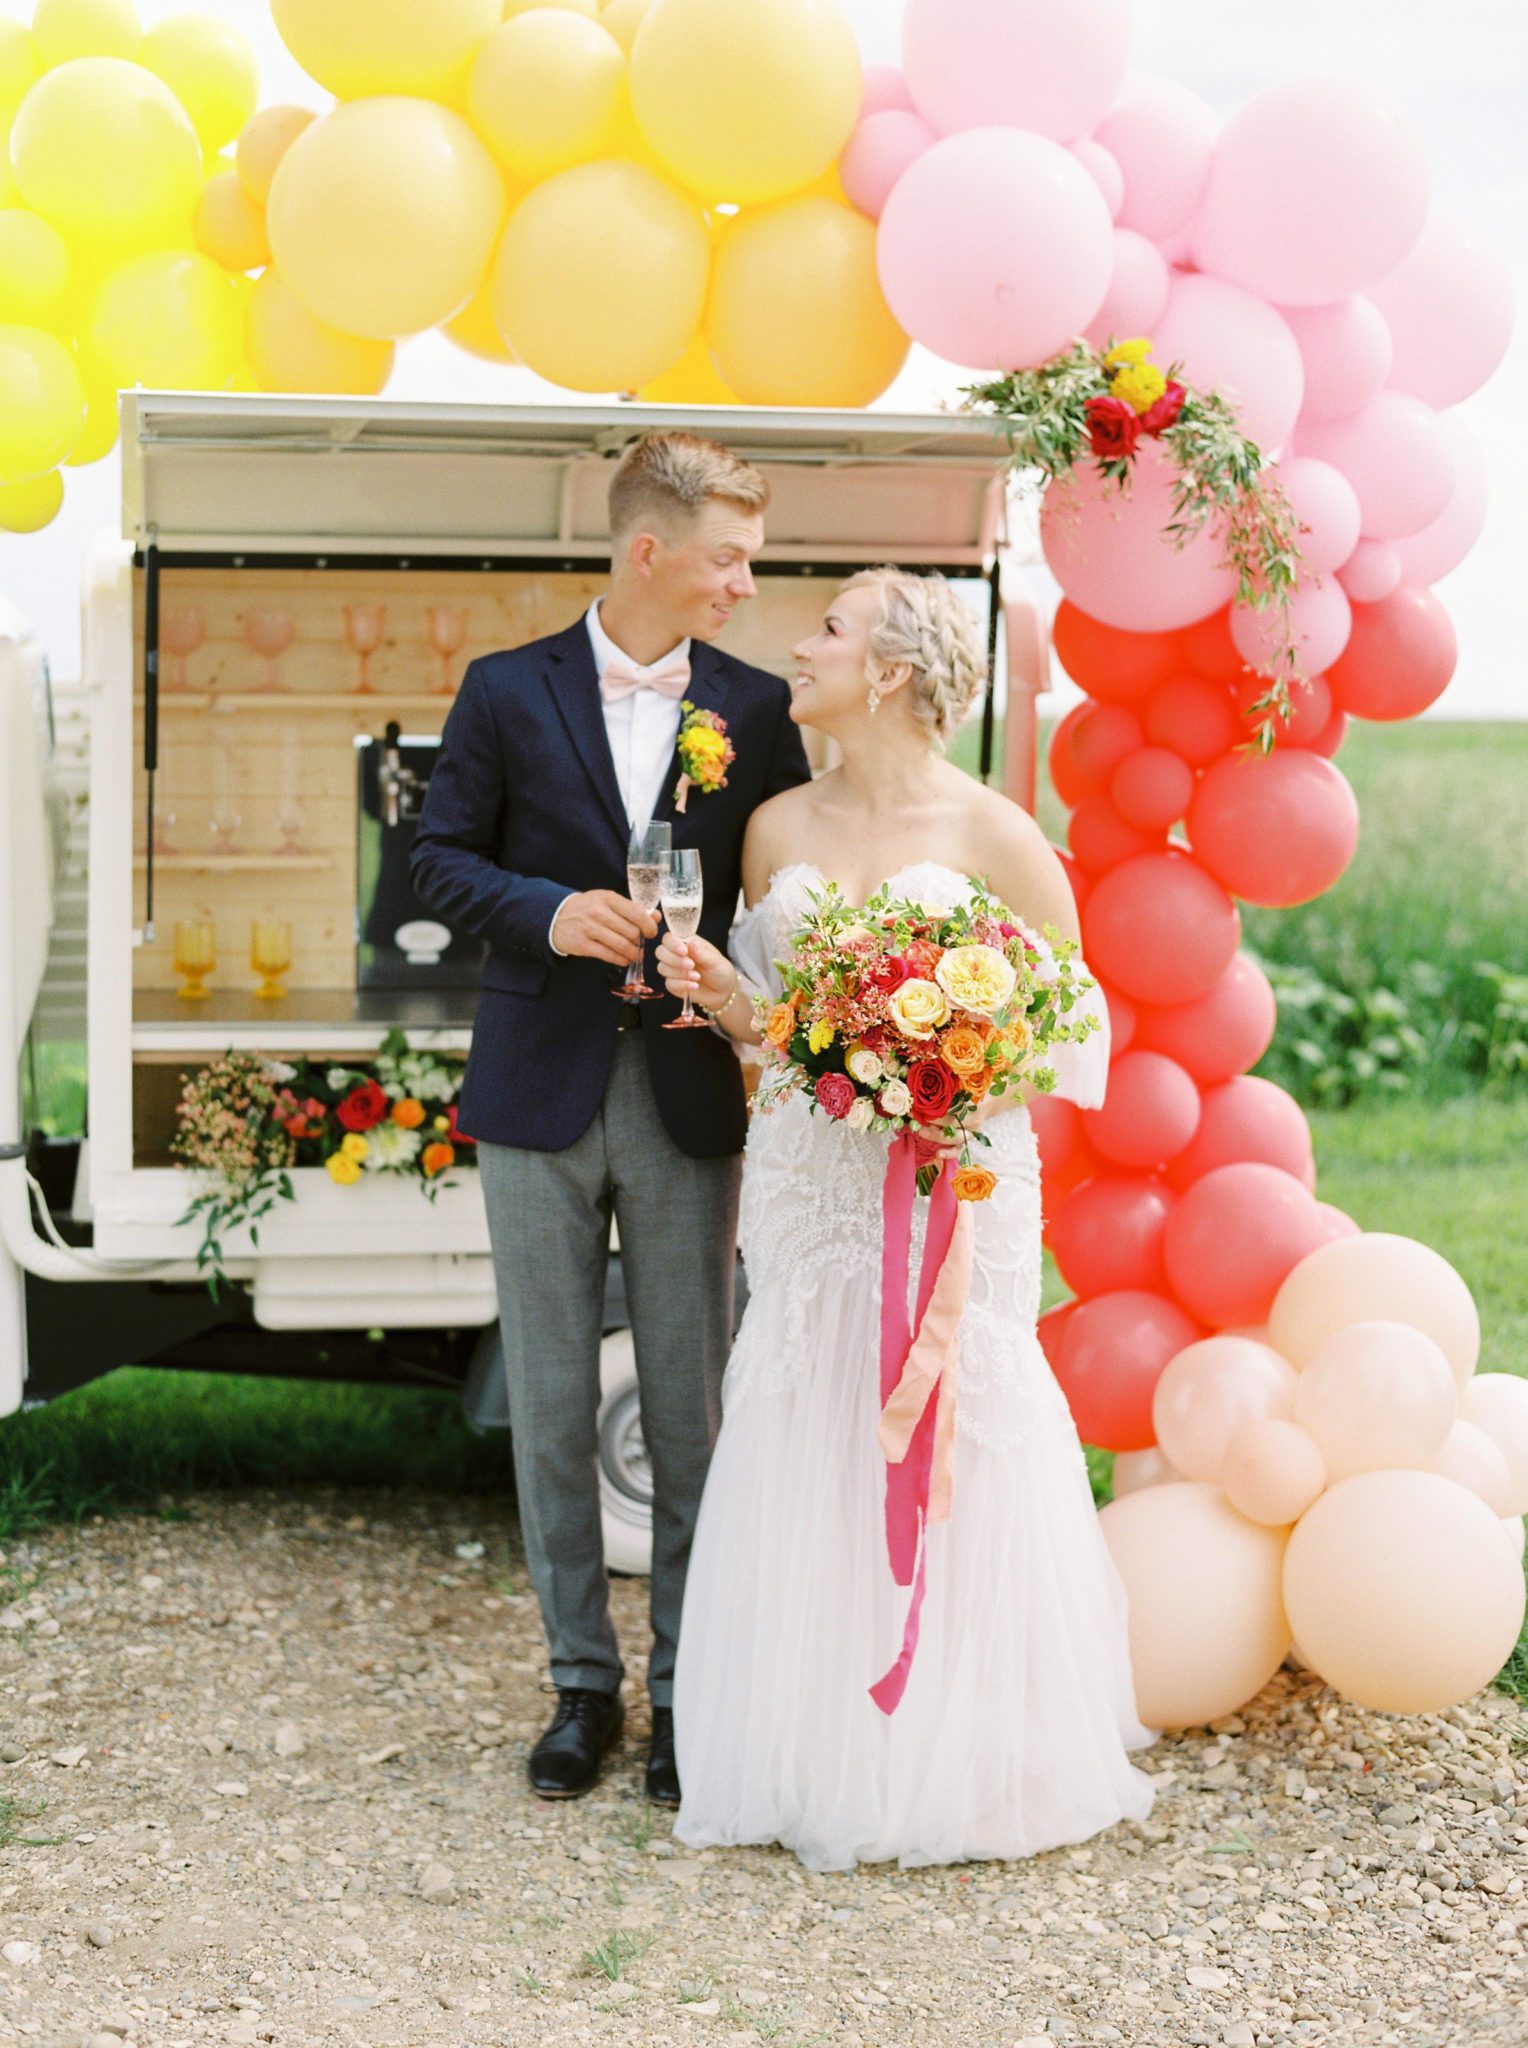 Wedding Prosecco Cart Balloons Celebration